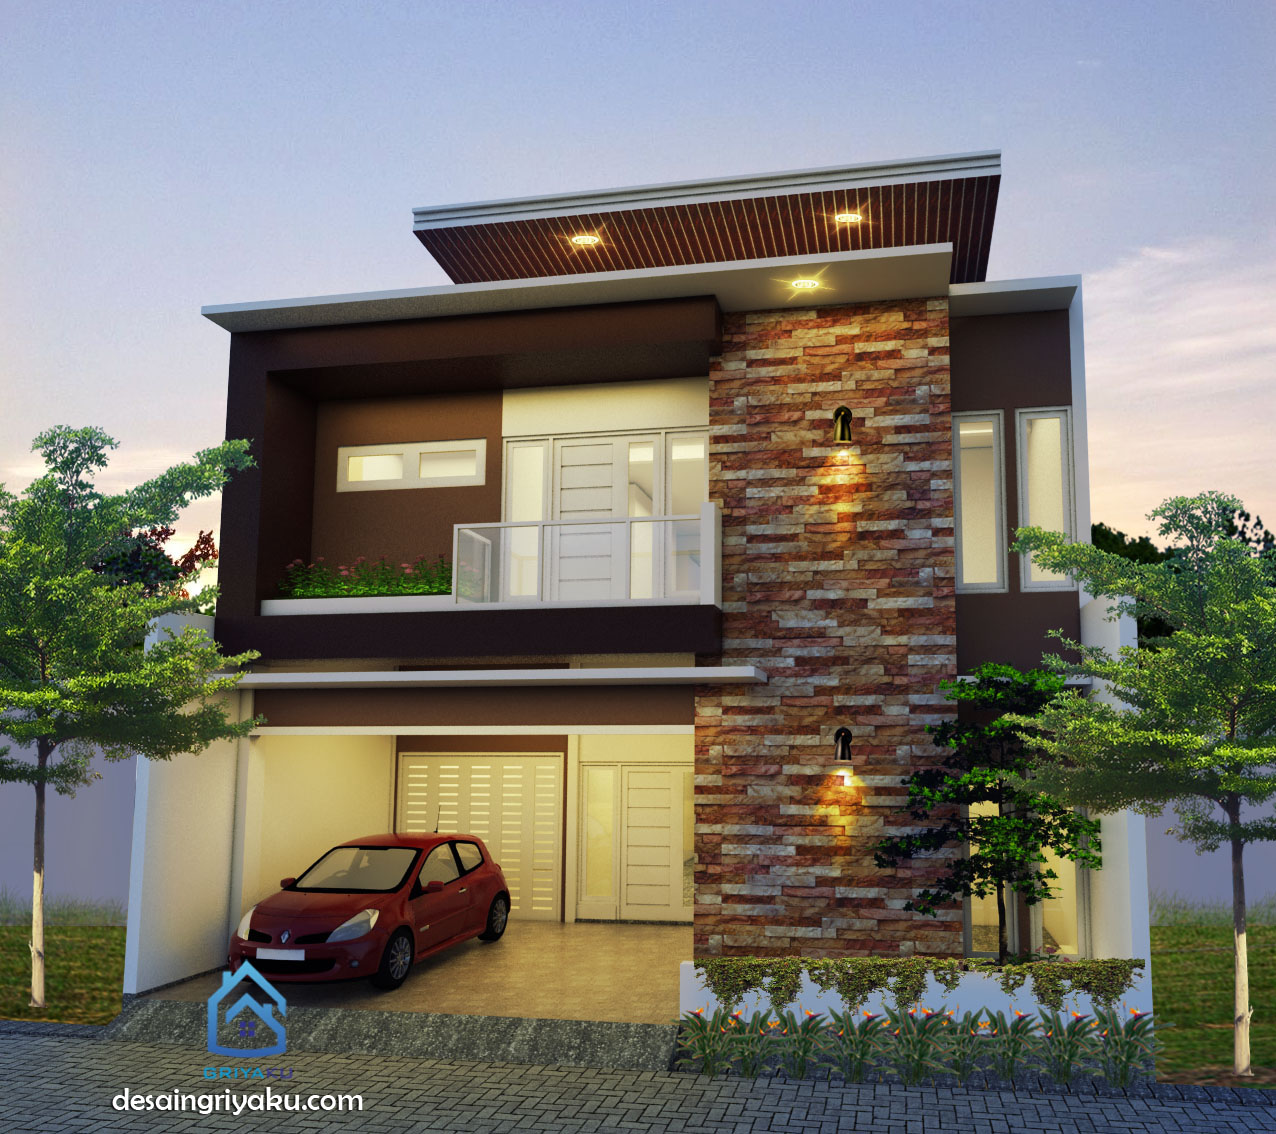 Download Desain Rumah Ruko Minimalis 2 Lantai 2020 Images - Konstruksi